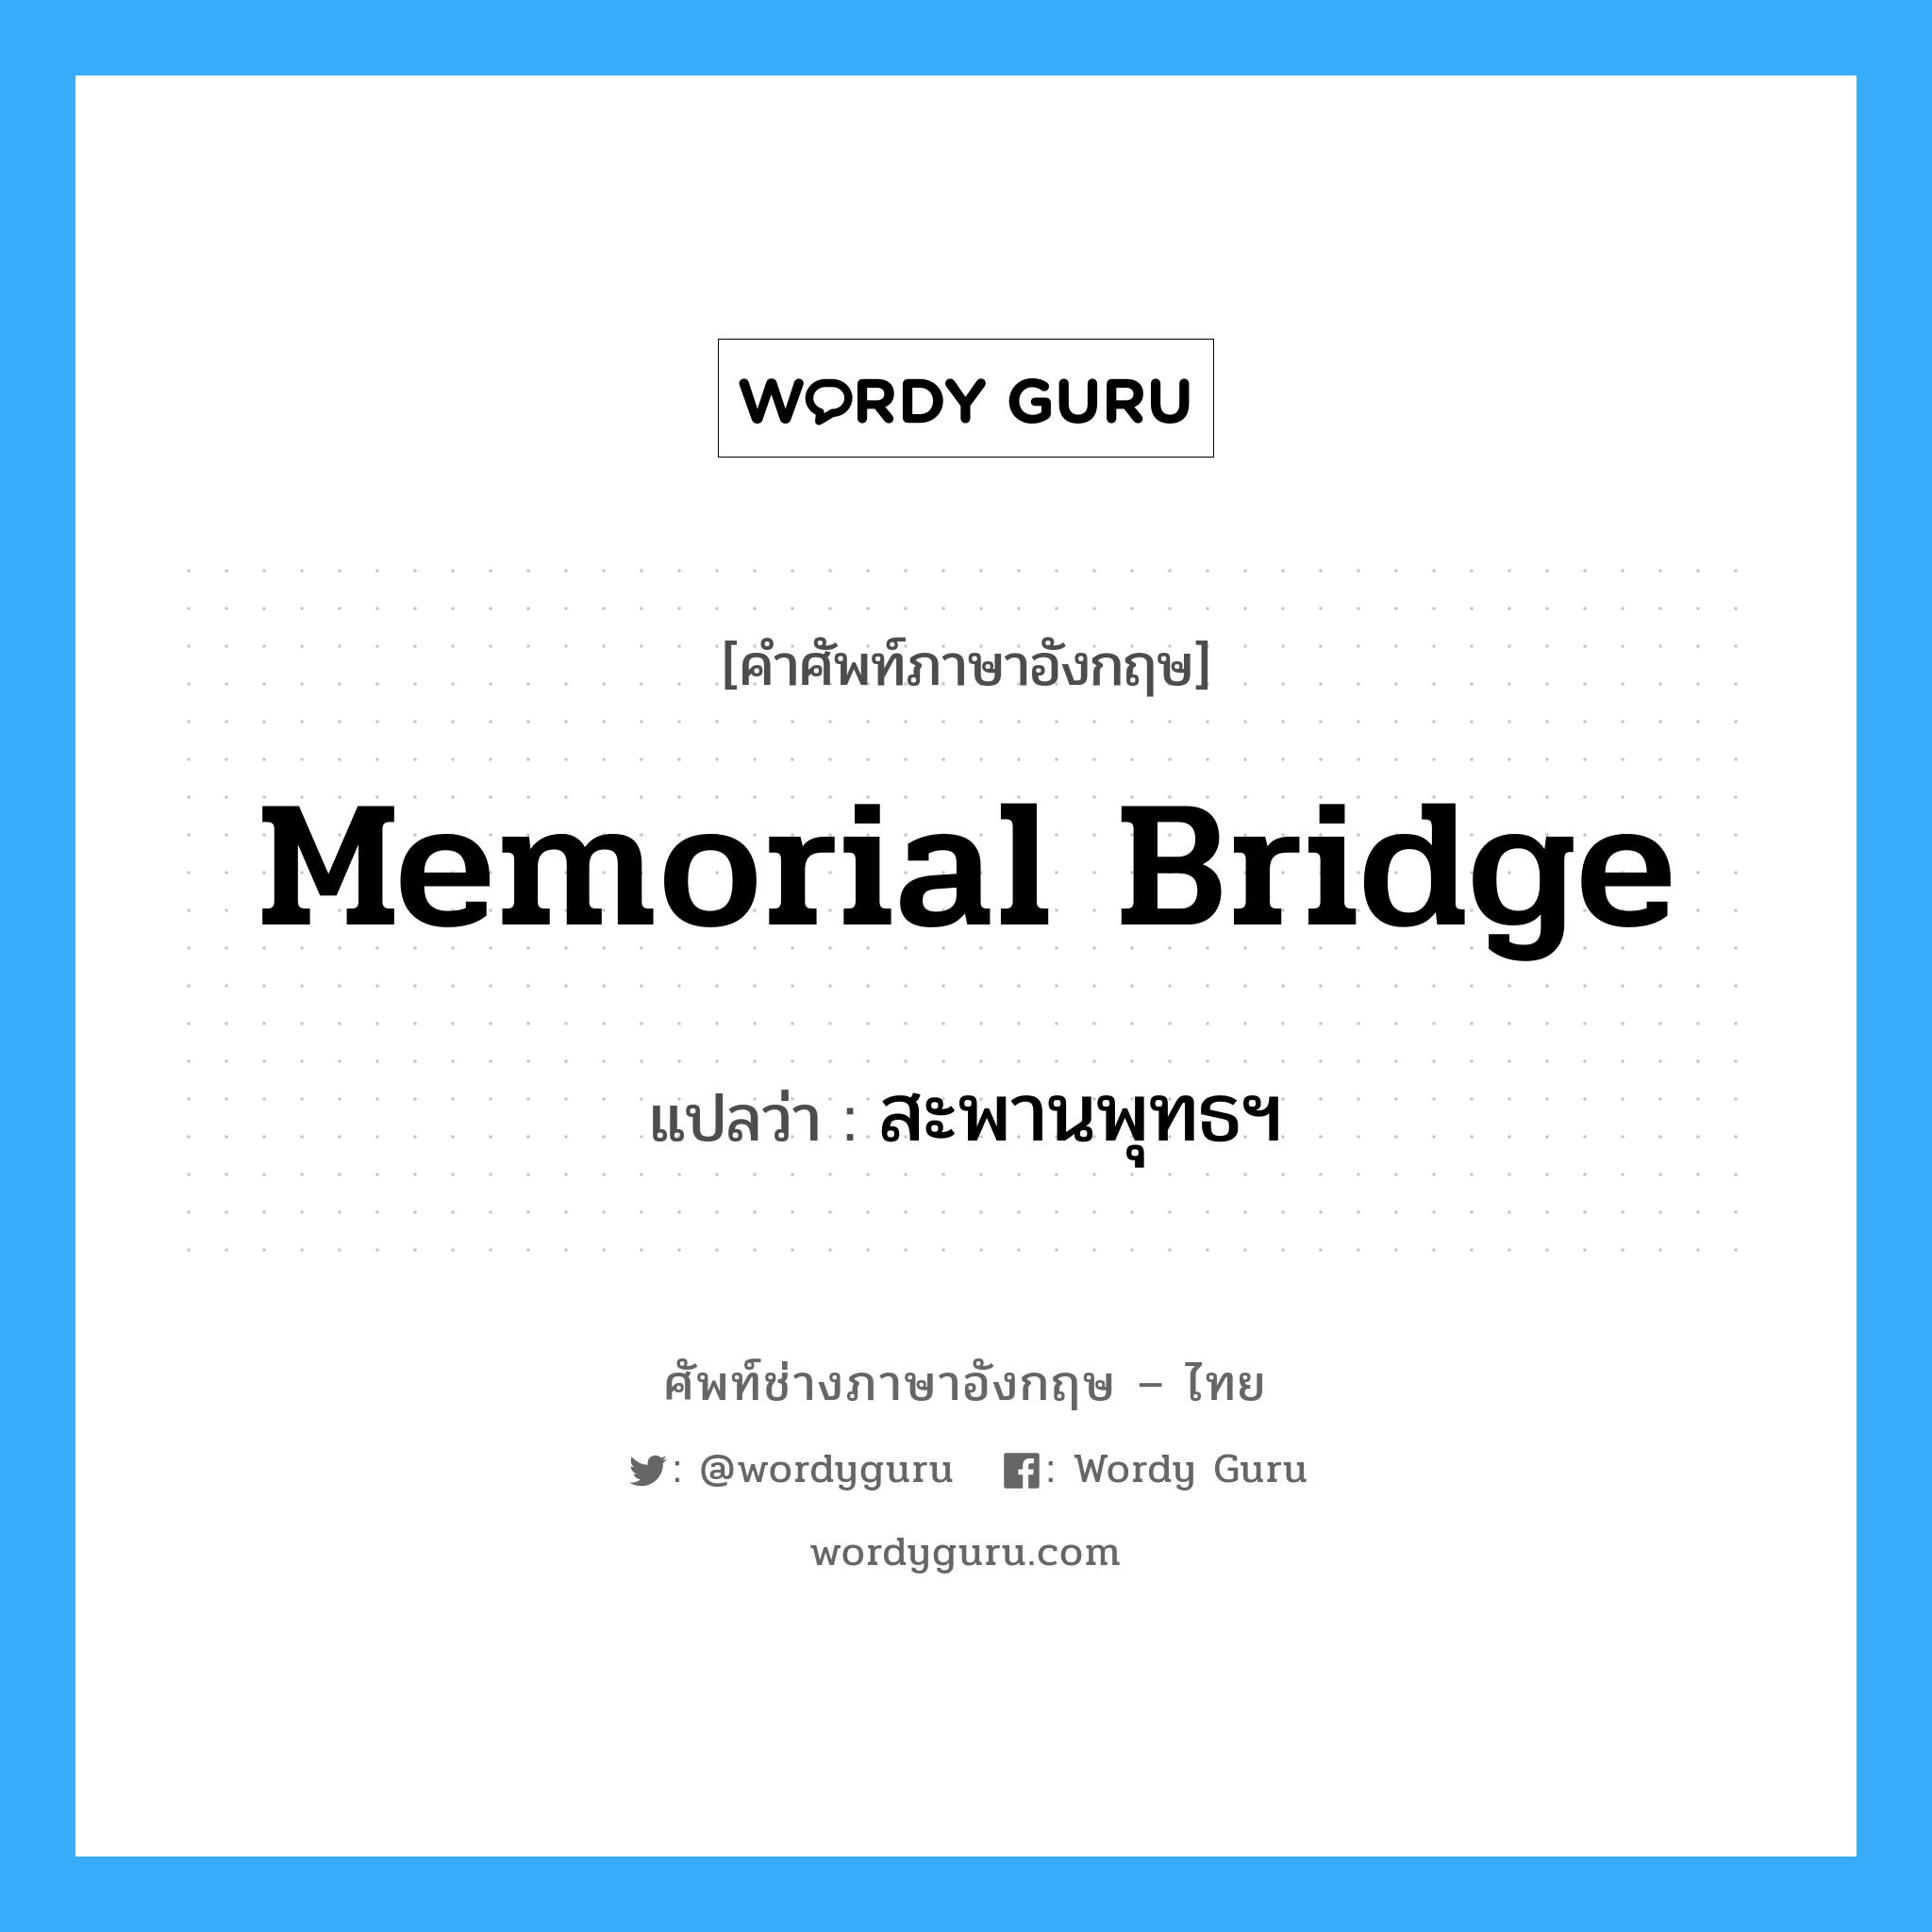 Memorial Bridge แปลว่า?, คำศัพท์ช่างภาษาอังกฤษ - ไทย Memorial Bridge คำศัพท์ภาษาอังกฤษ Memorial Bridge แปลว่า สะพานพุทธฯ